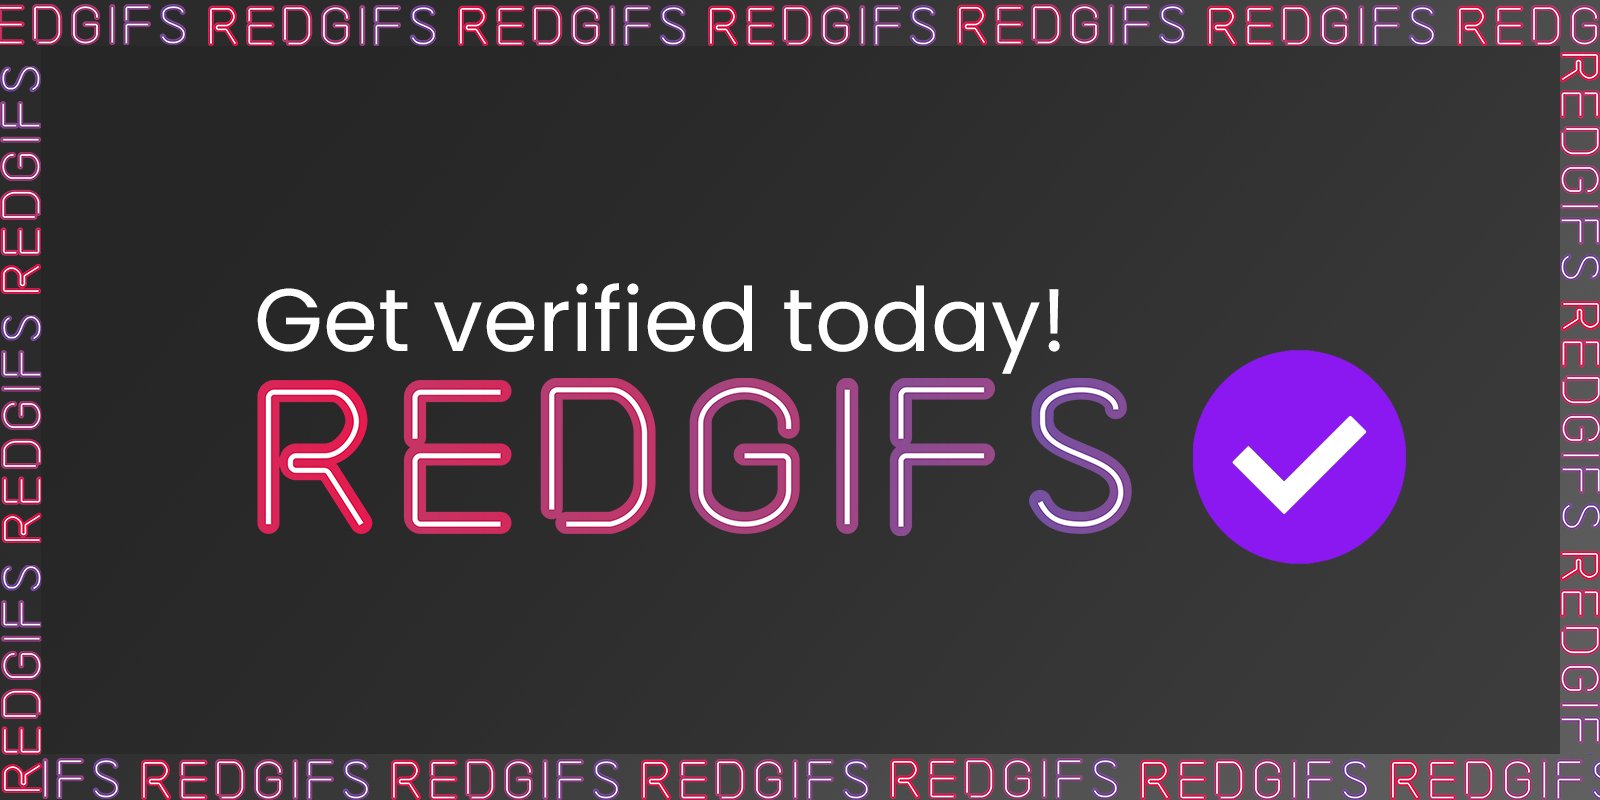 redgifs.com